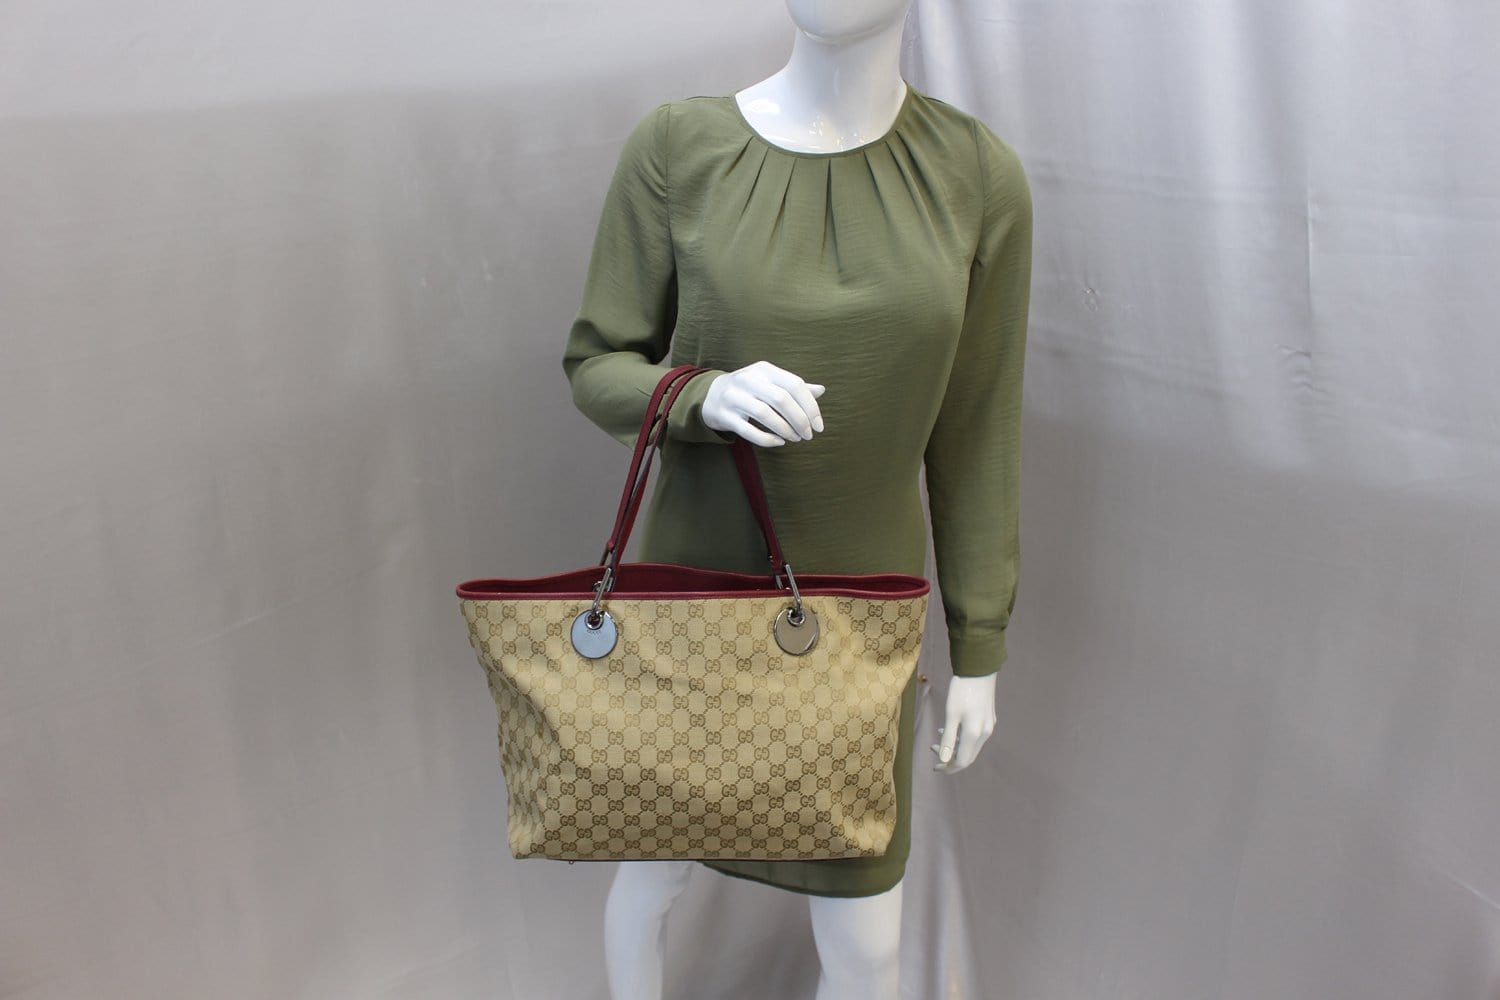 Gucci Pre-Owned Eclipse Tote Bag - Farfetch